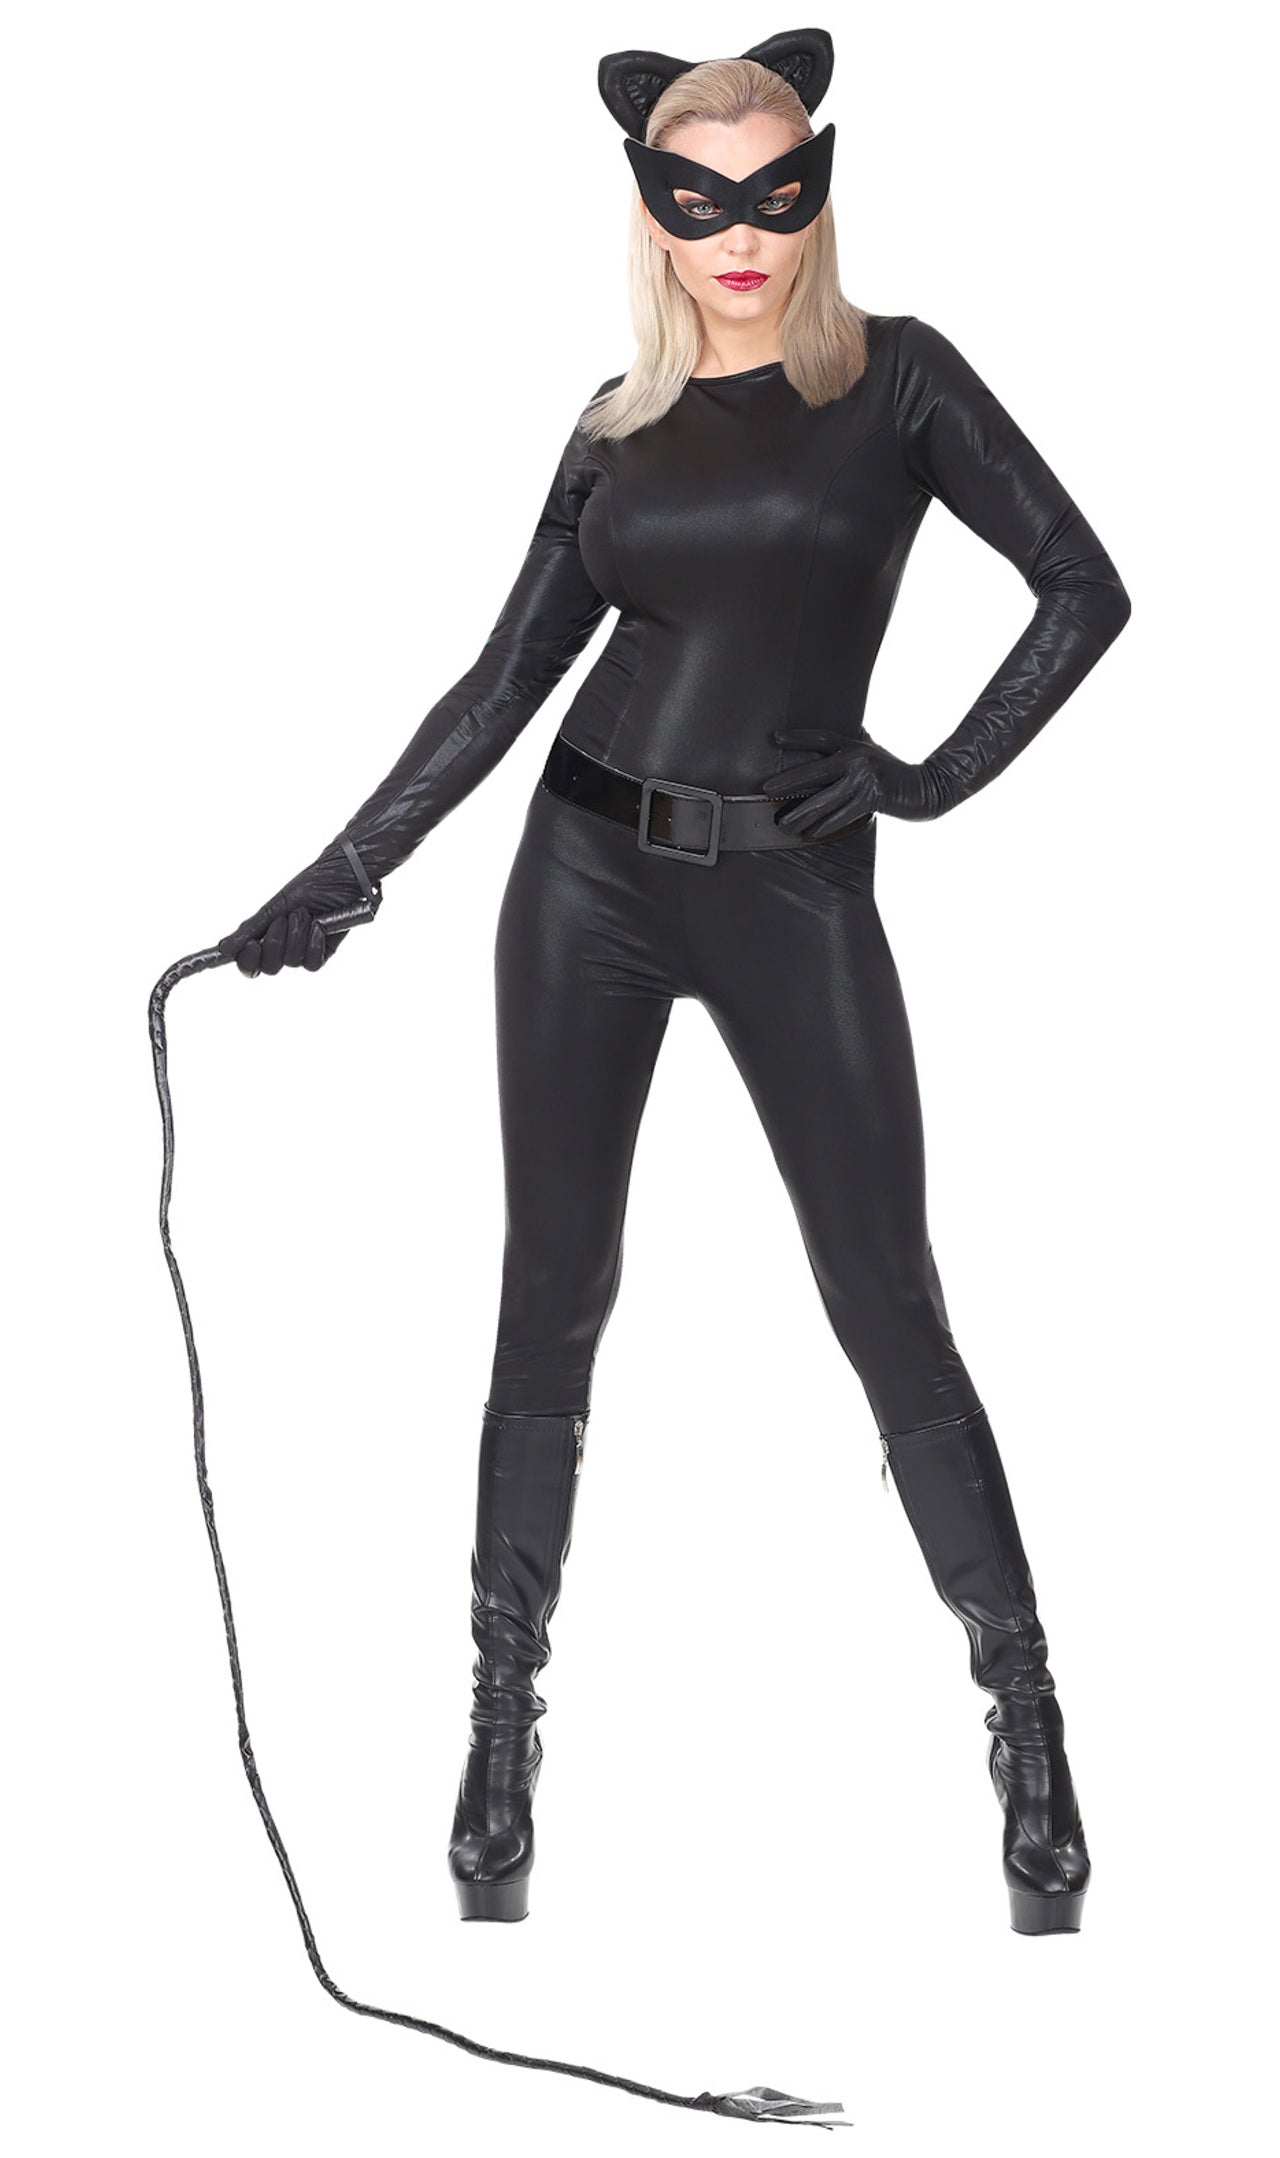 Costume Catwoman  Come realizzare la maschera di Catwoman 